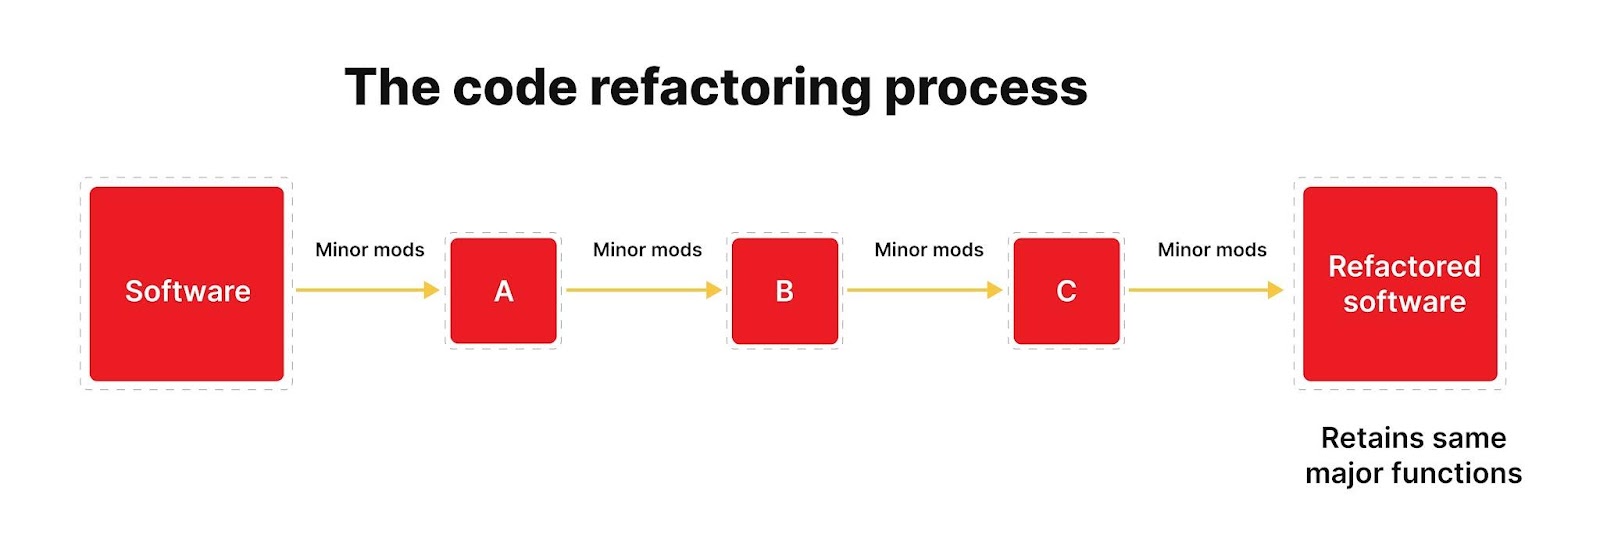 Code refactoring